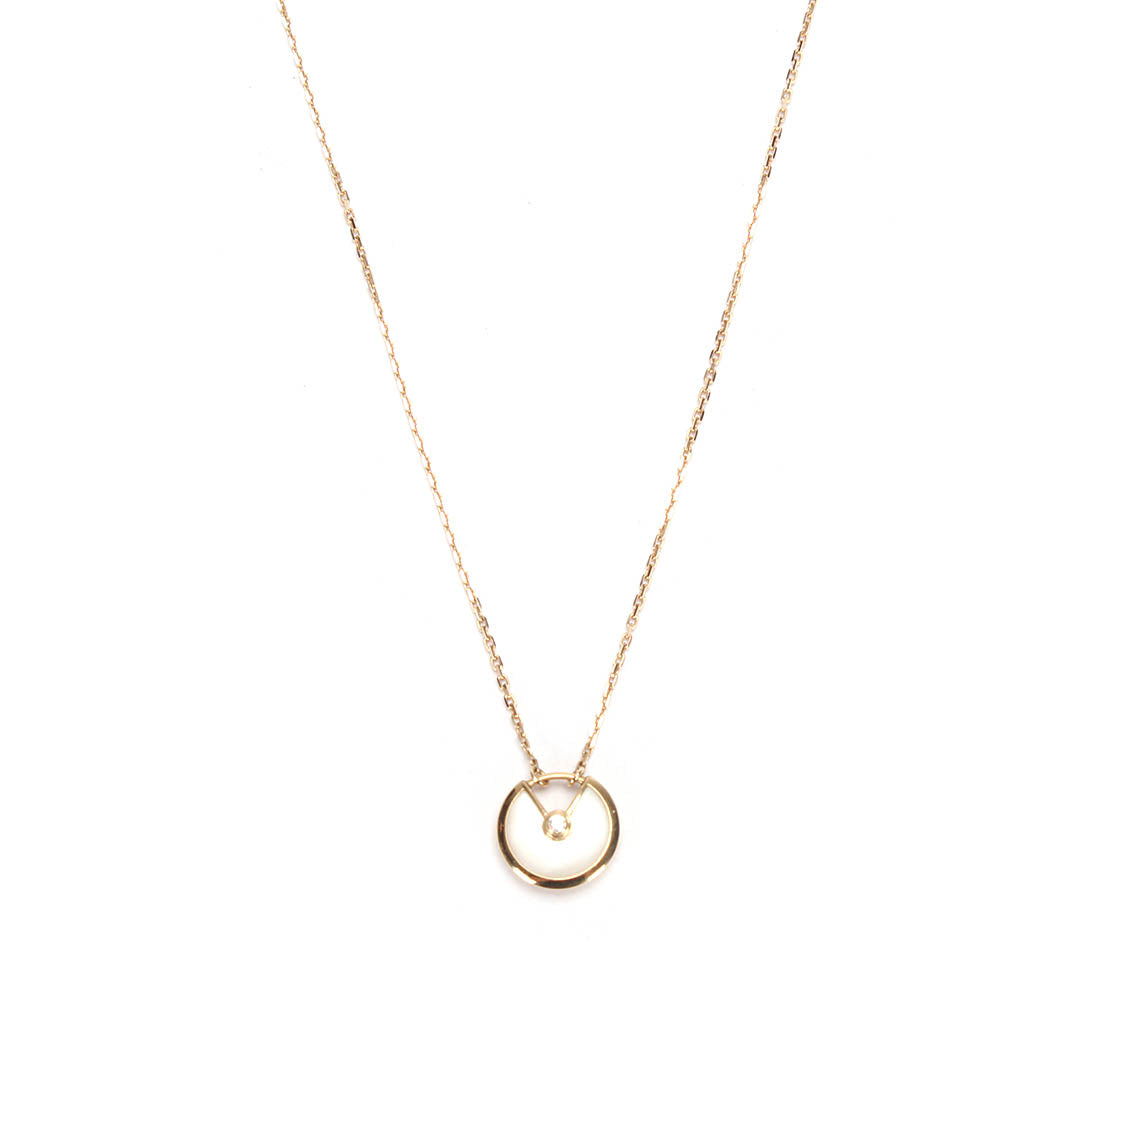 XS Mother of Pearl Amulette de Cartier Necklace